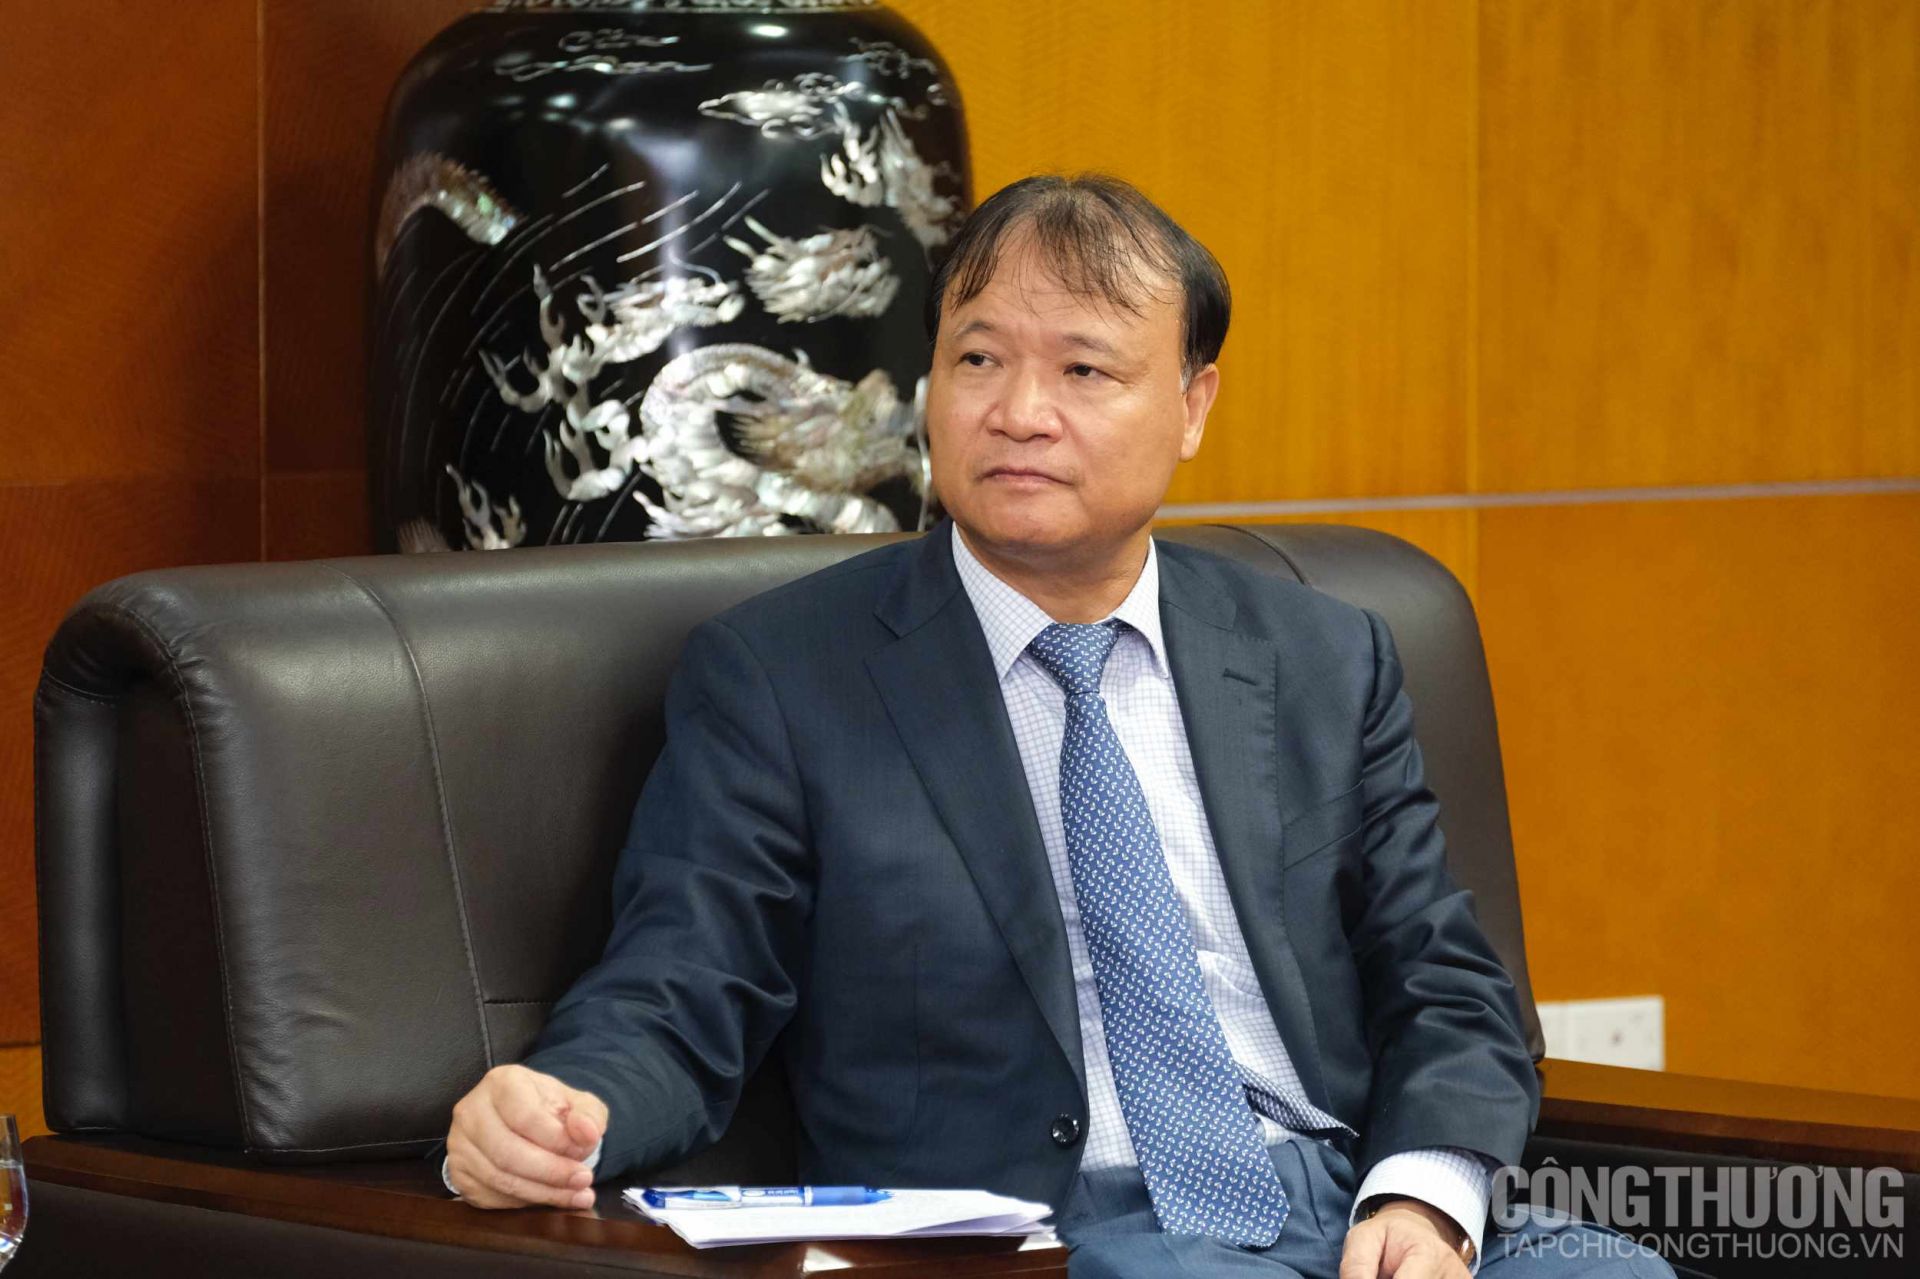 Thứ trưởng Đỗ Thắng Hải đánh giá cao những đóng góp của Fast Retailing và Uniqlo đối với ngành dệt may nói riêng và kinh tế Việt Nam nói chung